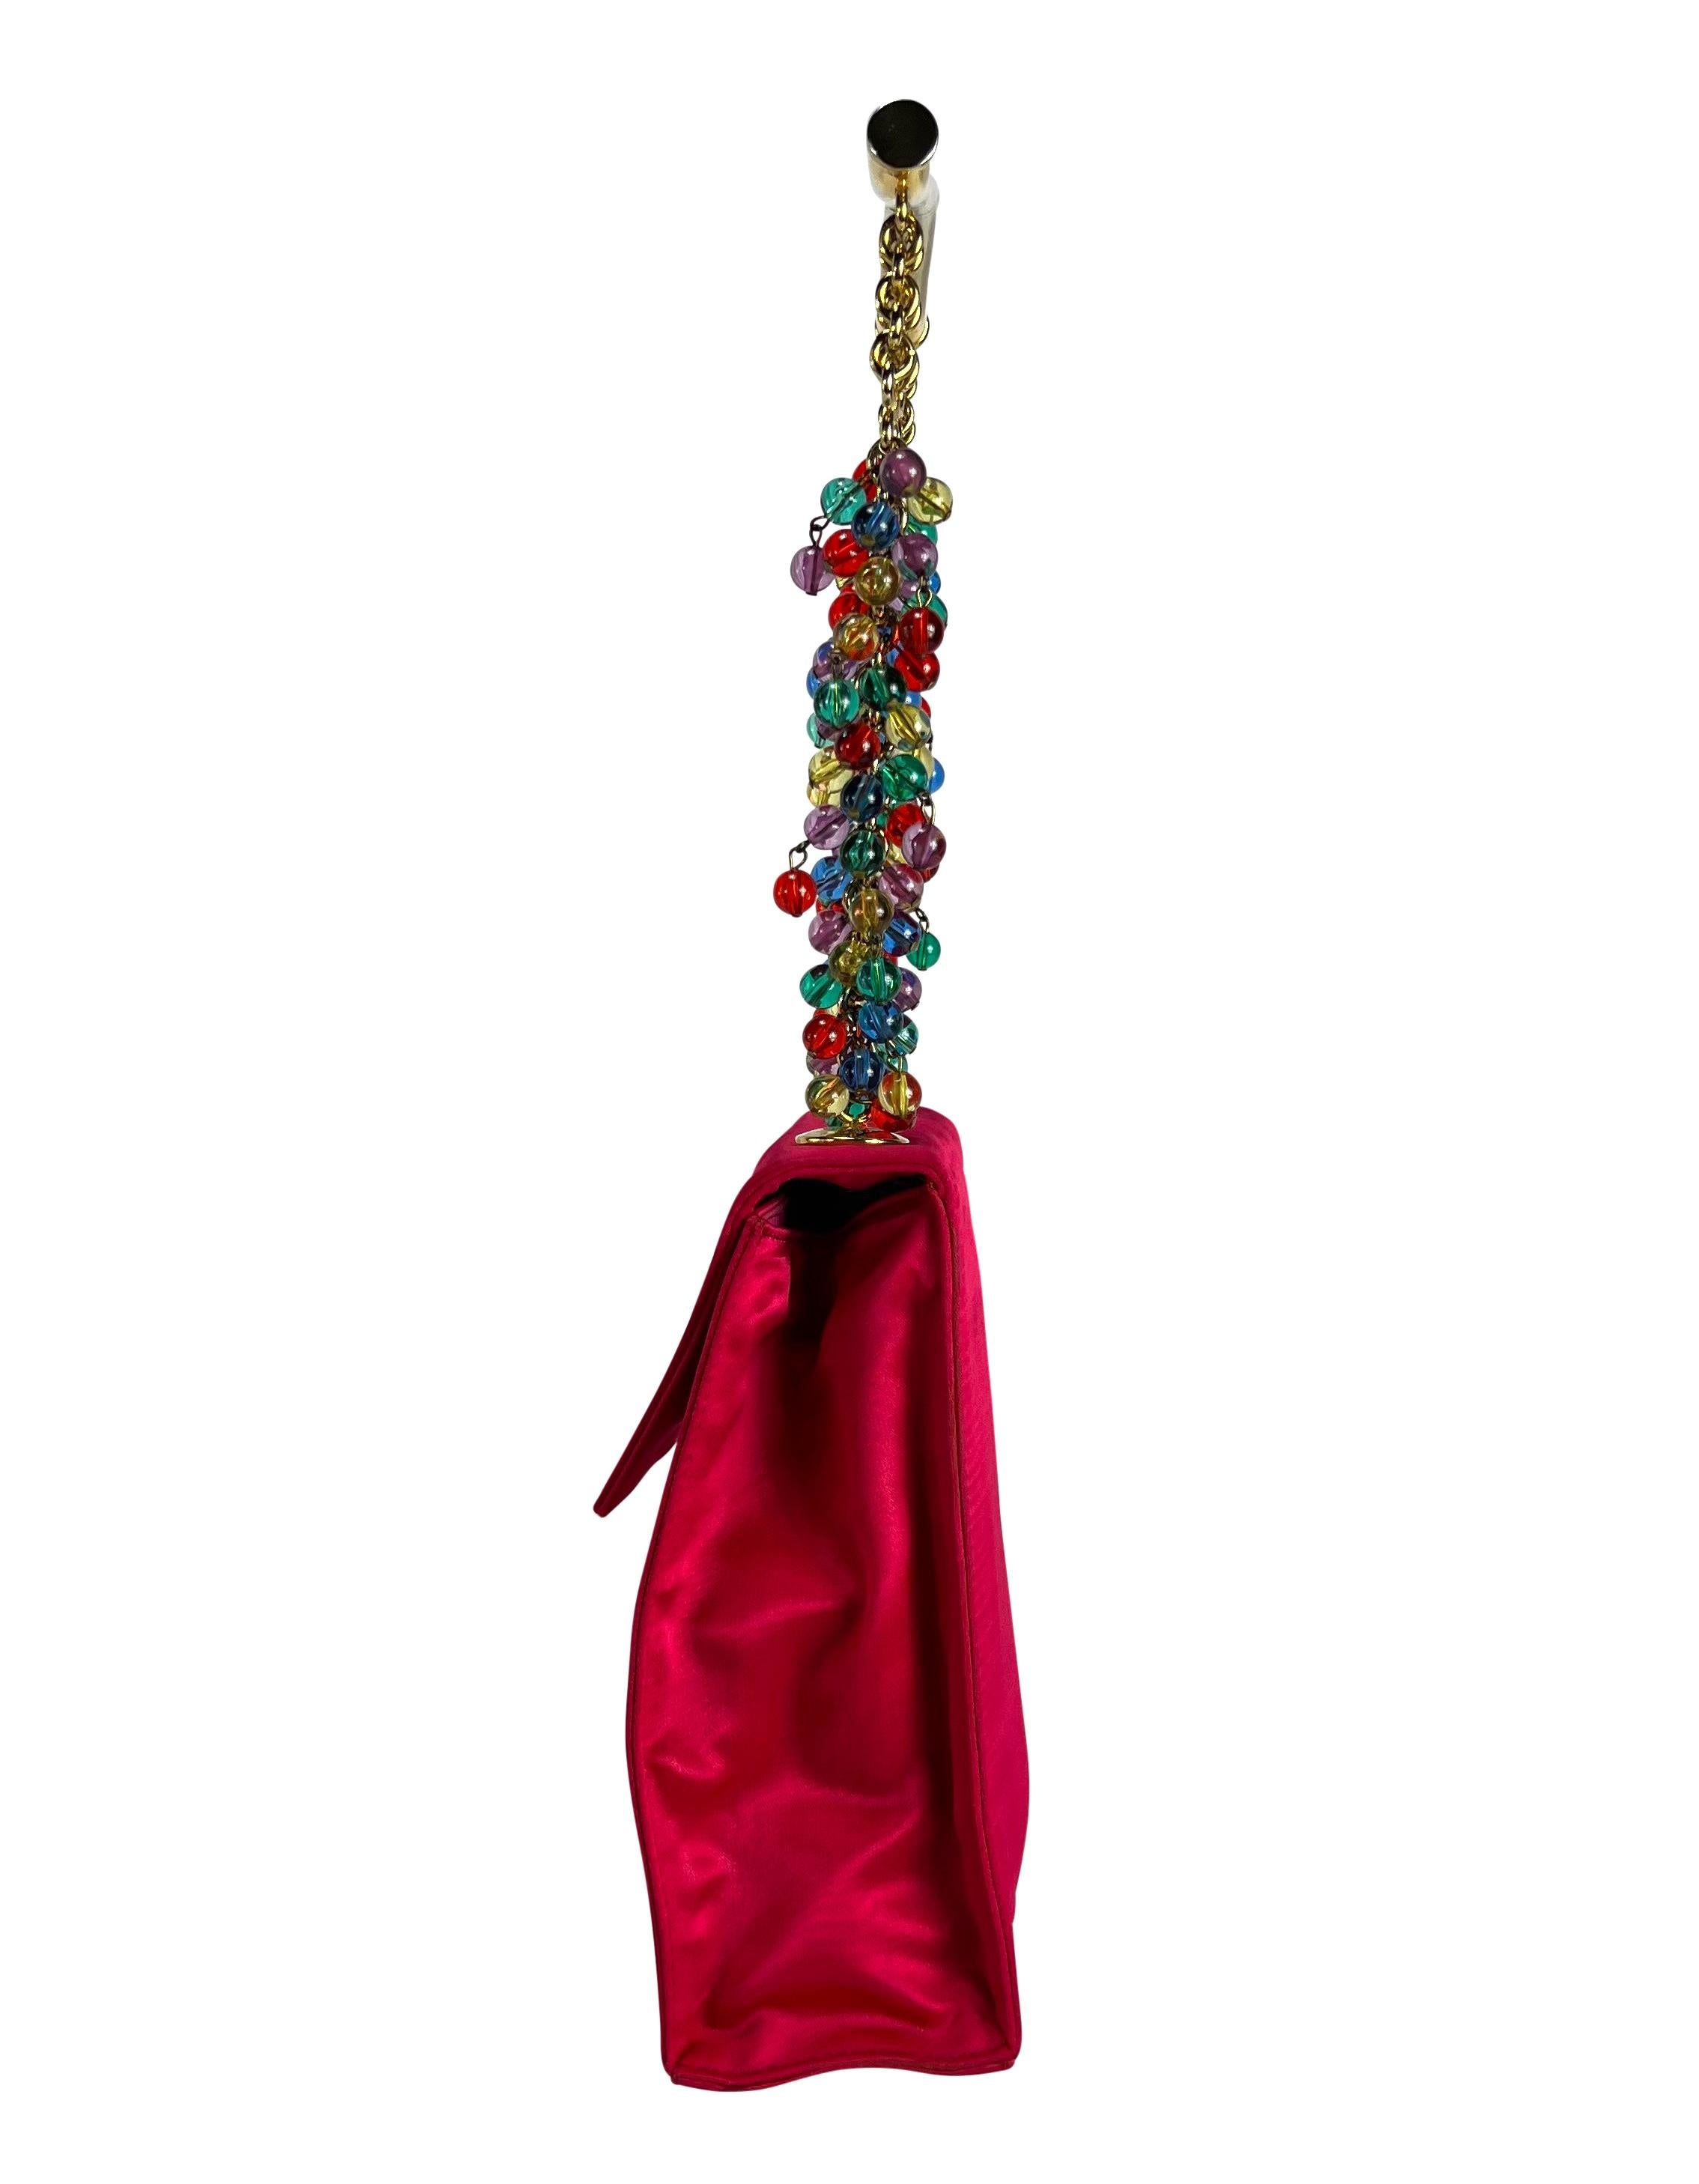 S/S 1991 Gianni Versace Sac à poignée en satin rose vif orné de perles  Pour femmes en vente